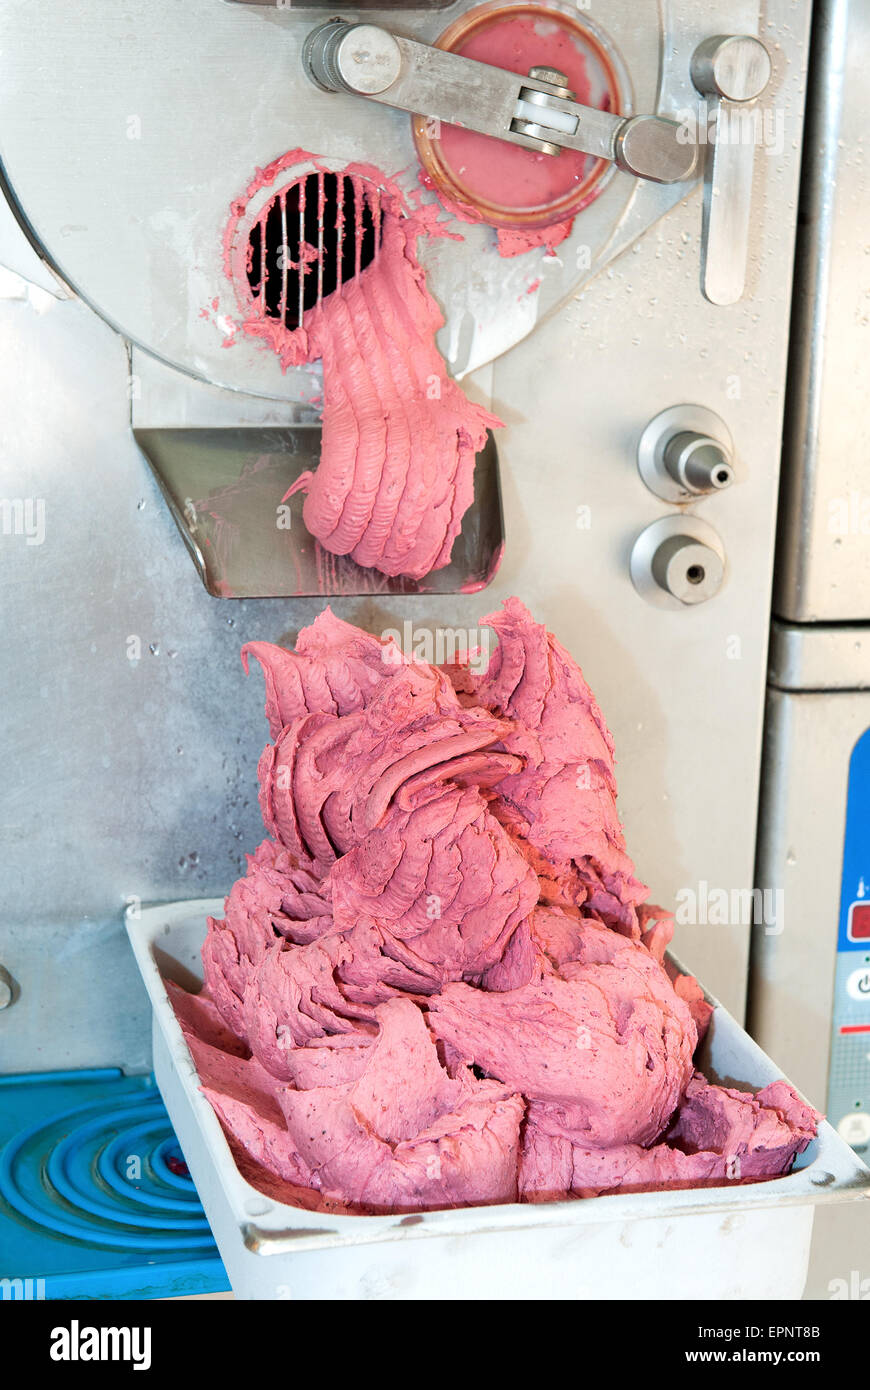 Berry ice cream essendo realizzato in un acciaio inossidabile zangola industriale o macchina essendo erogato in un vassoio per esposizione e vendita Foto Stock